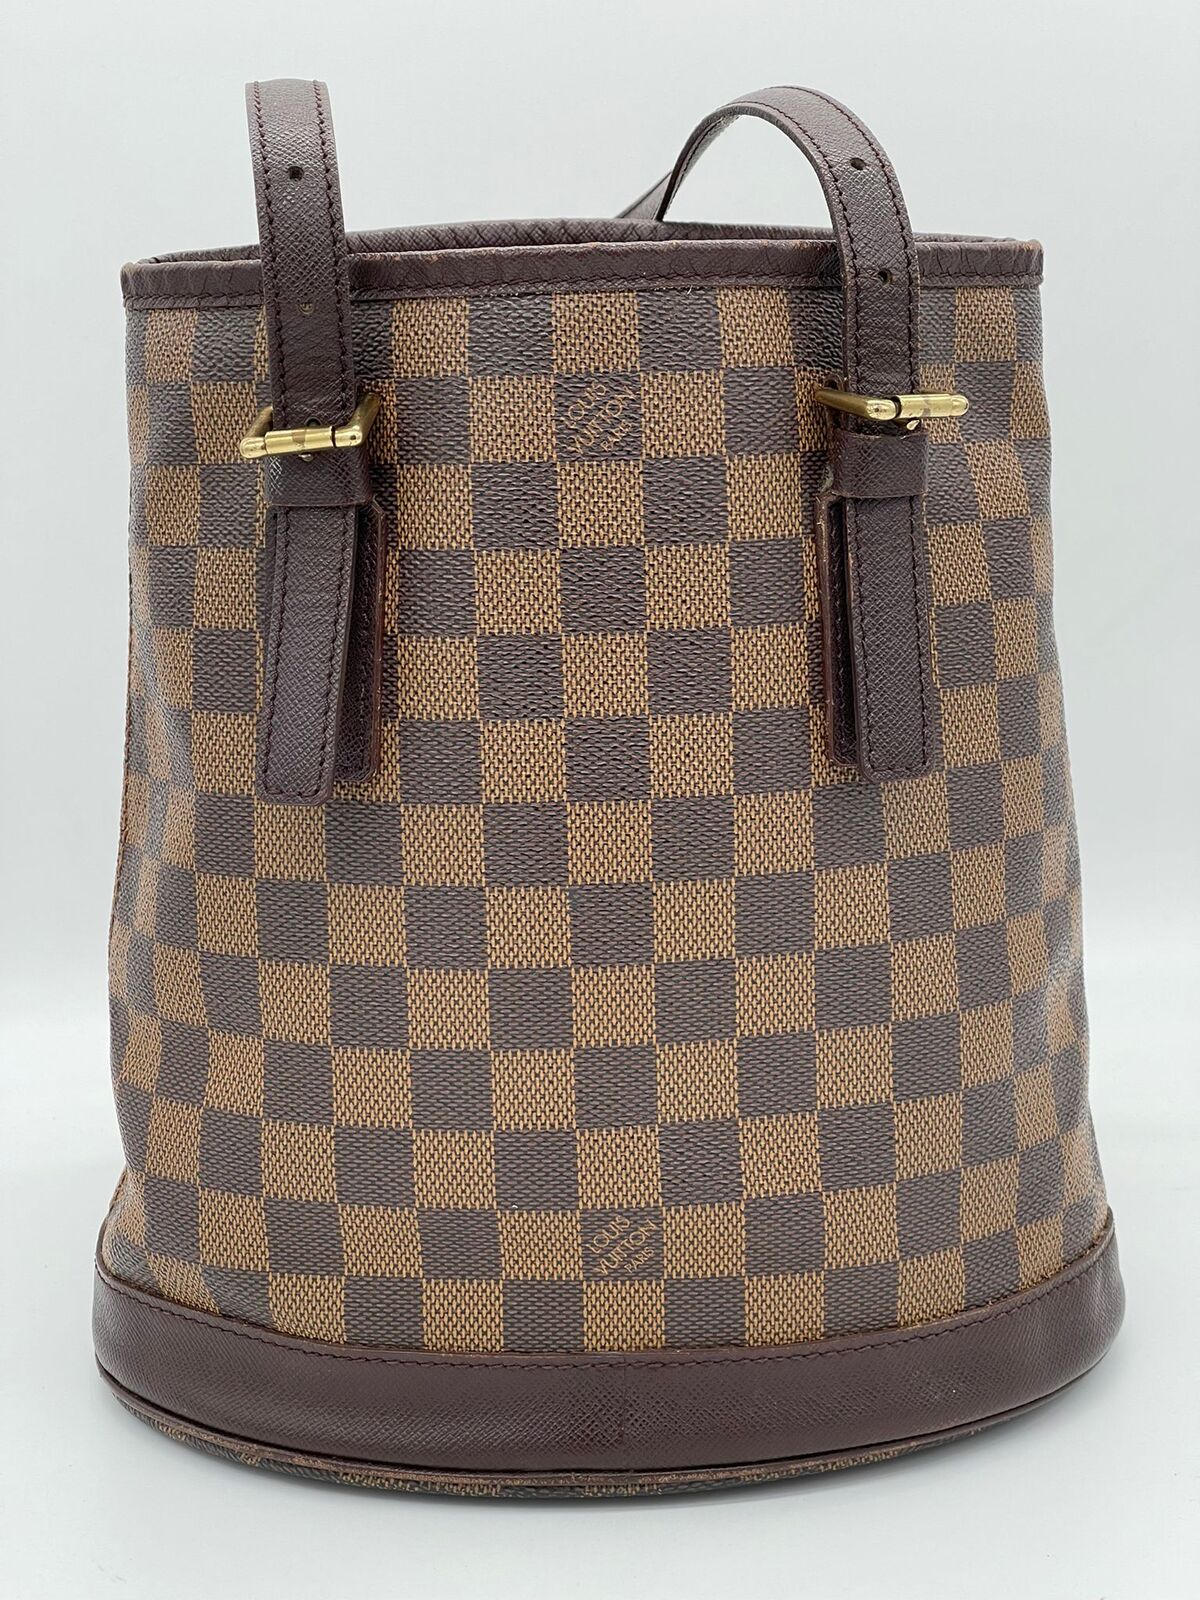 Louis Vuitton Damier Marais Bucket Shoulder Bag N42240 Tote Authentic